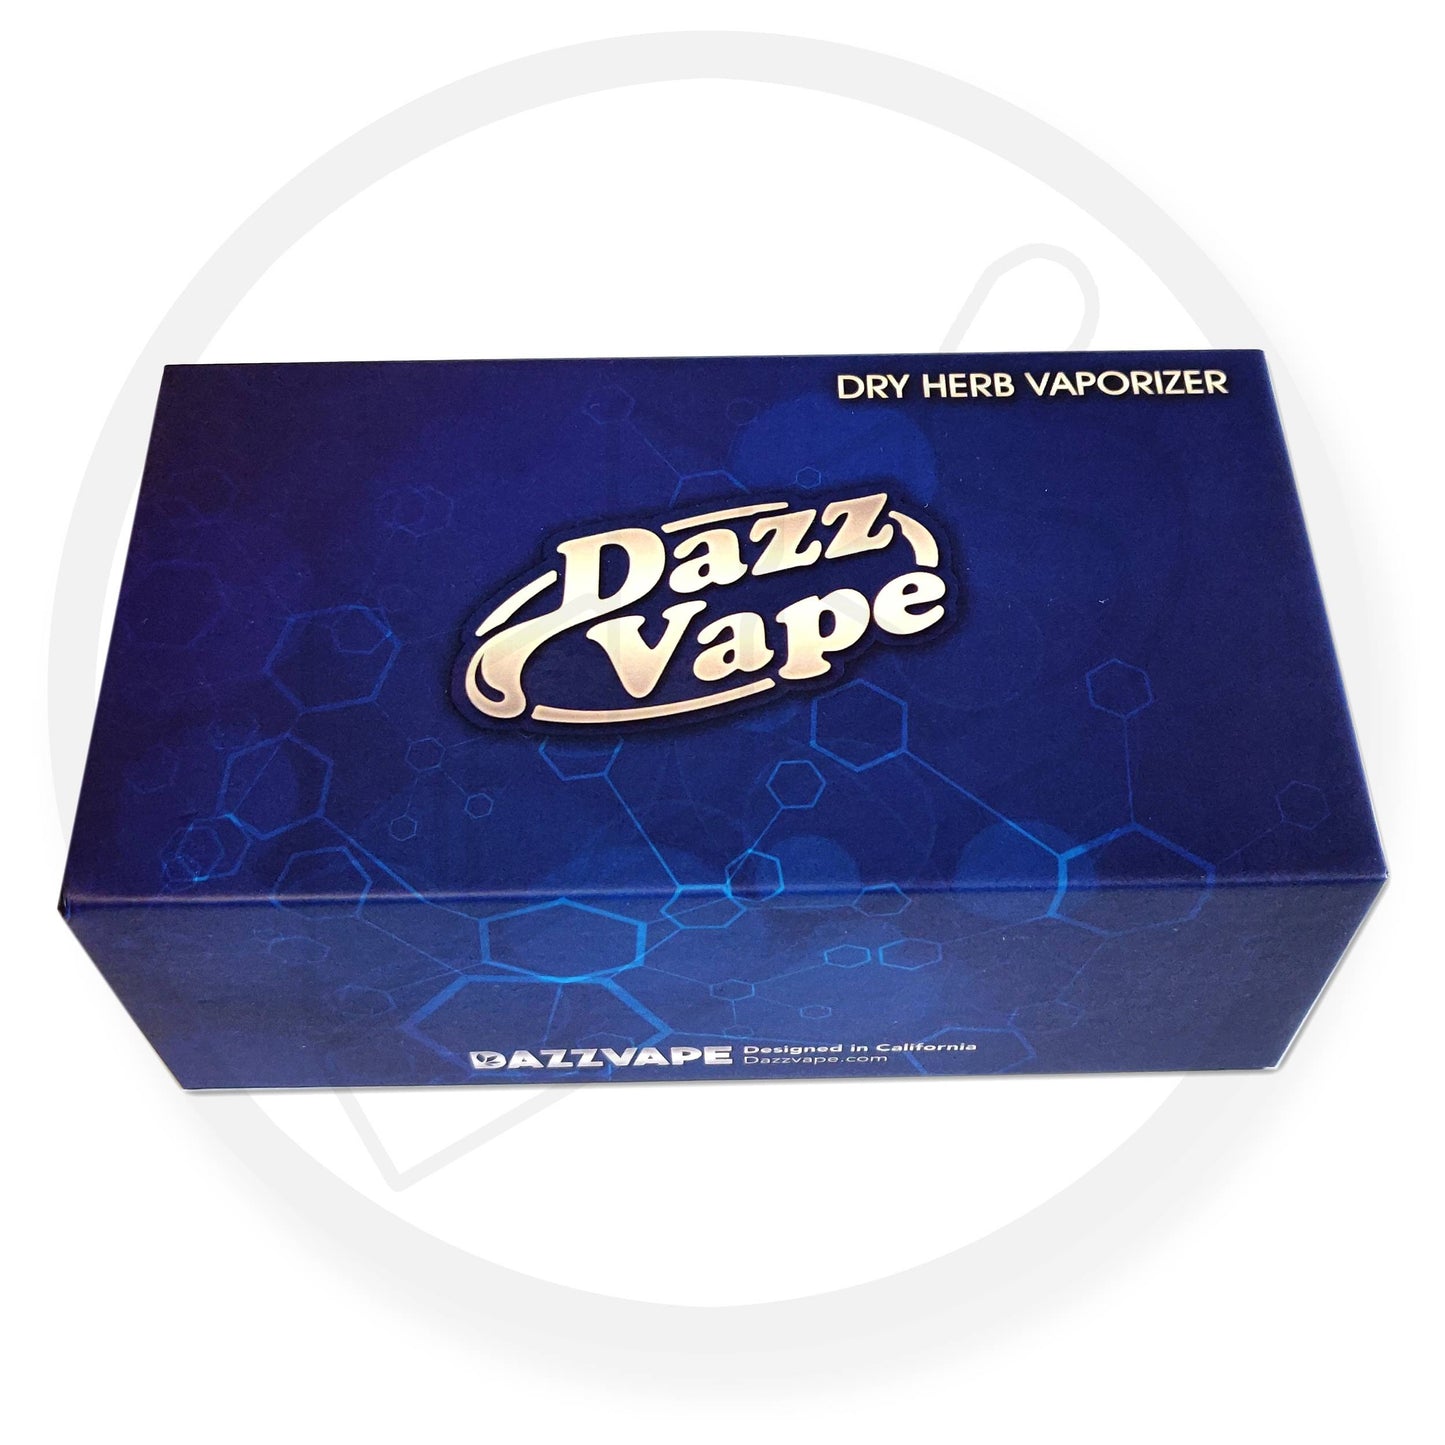 Dazzvape - Dry Herb Vaporiser Kit